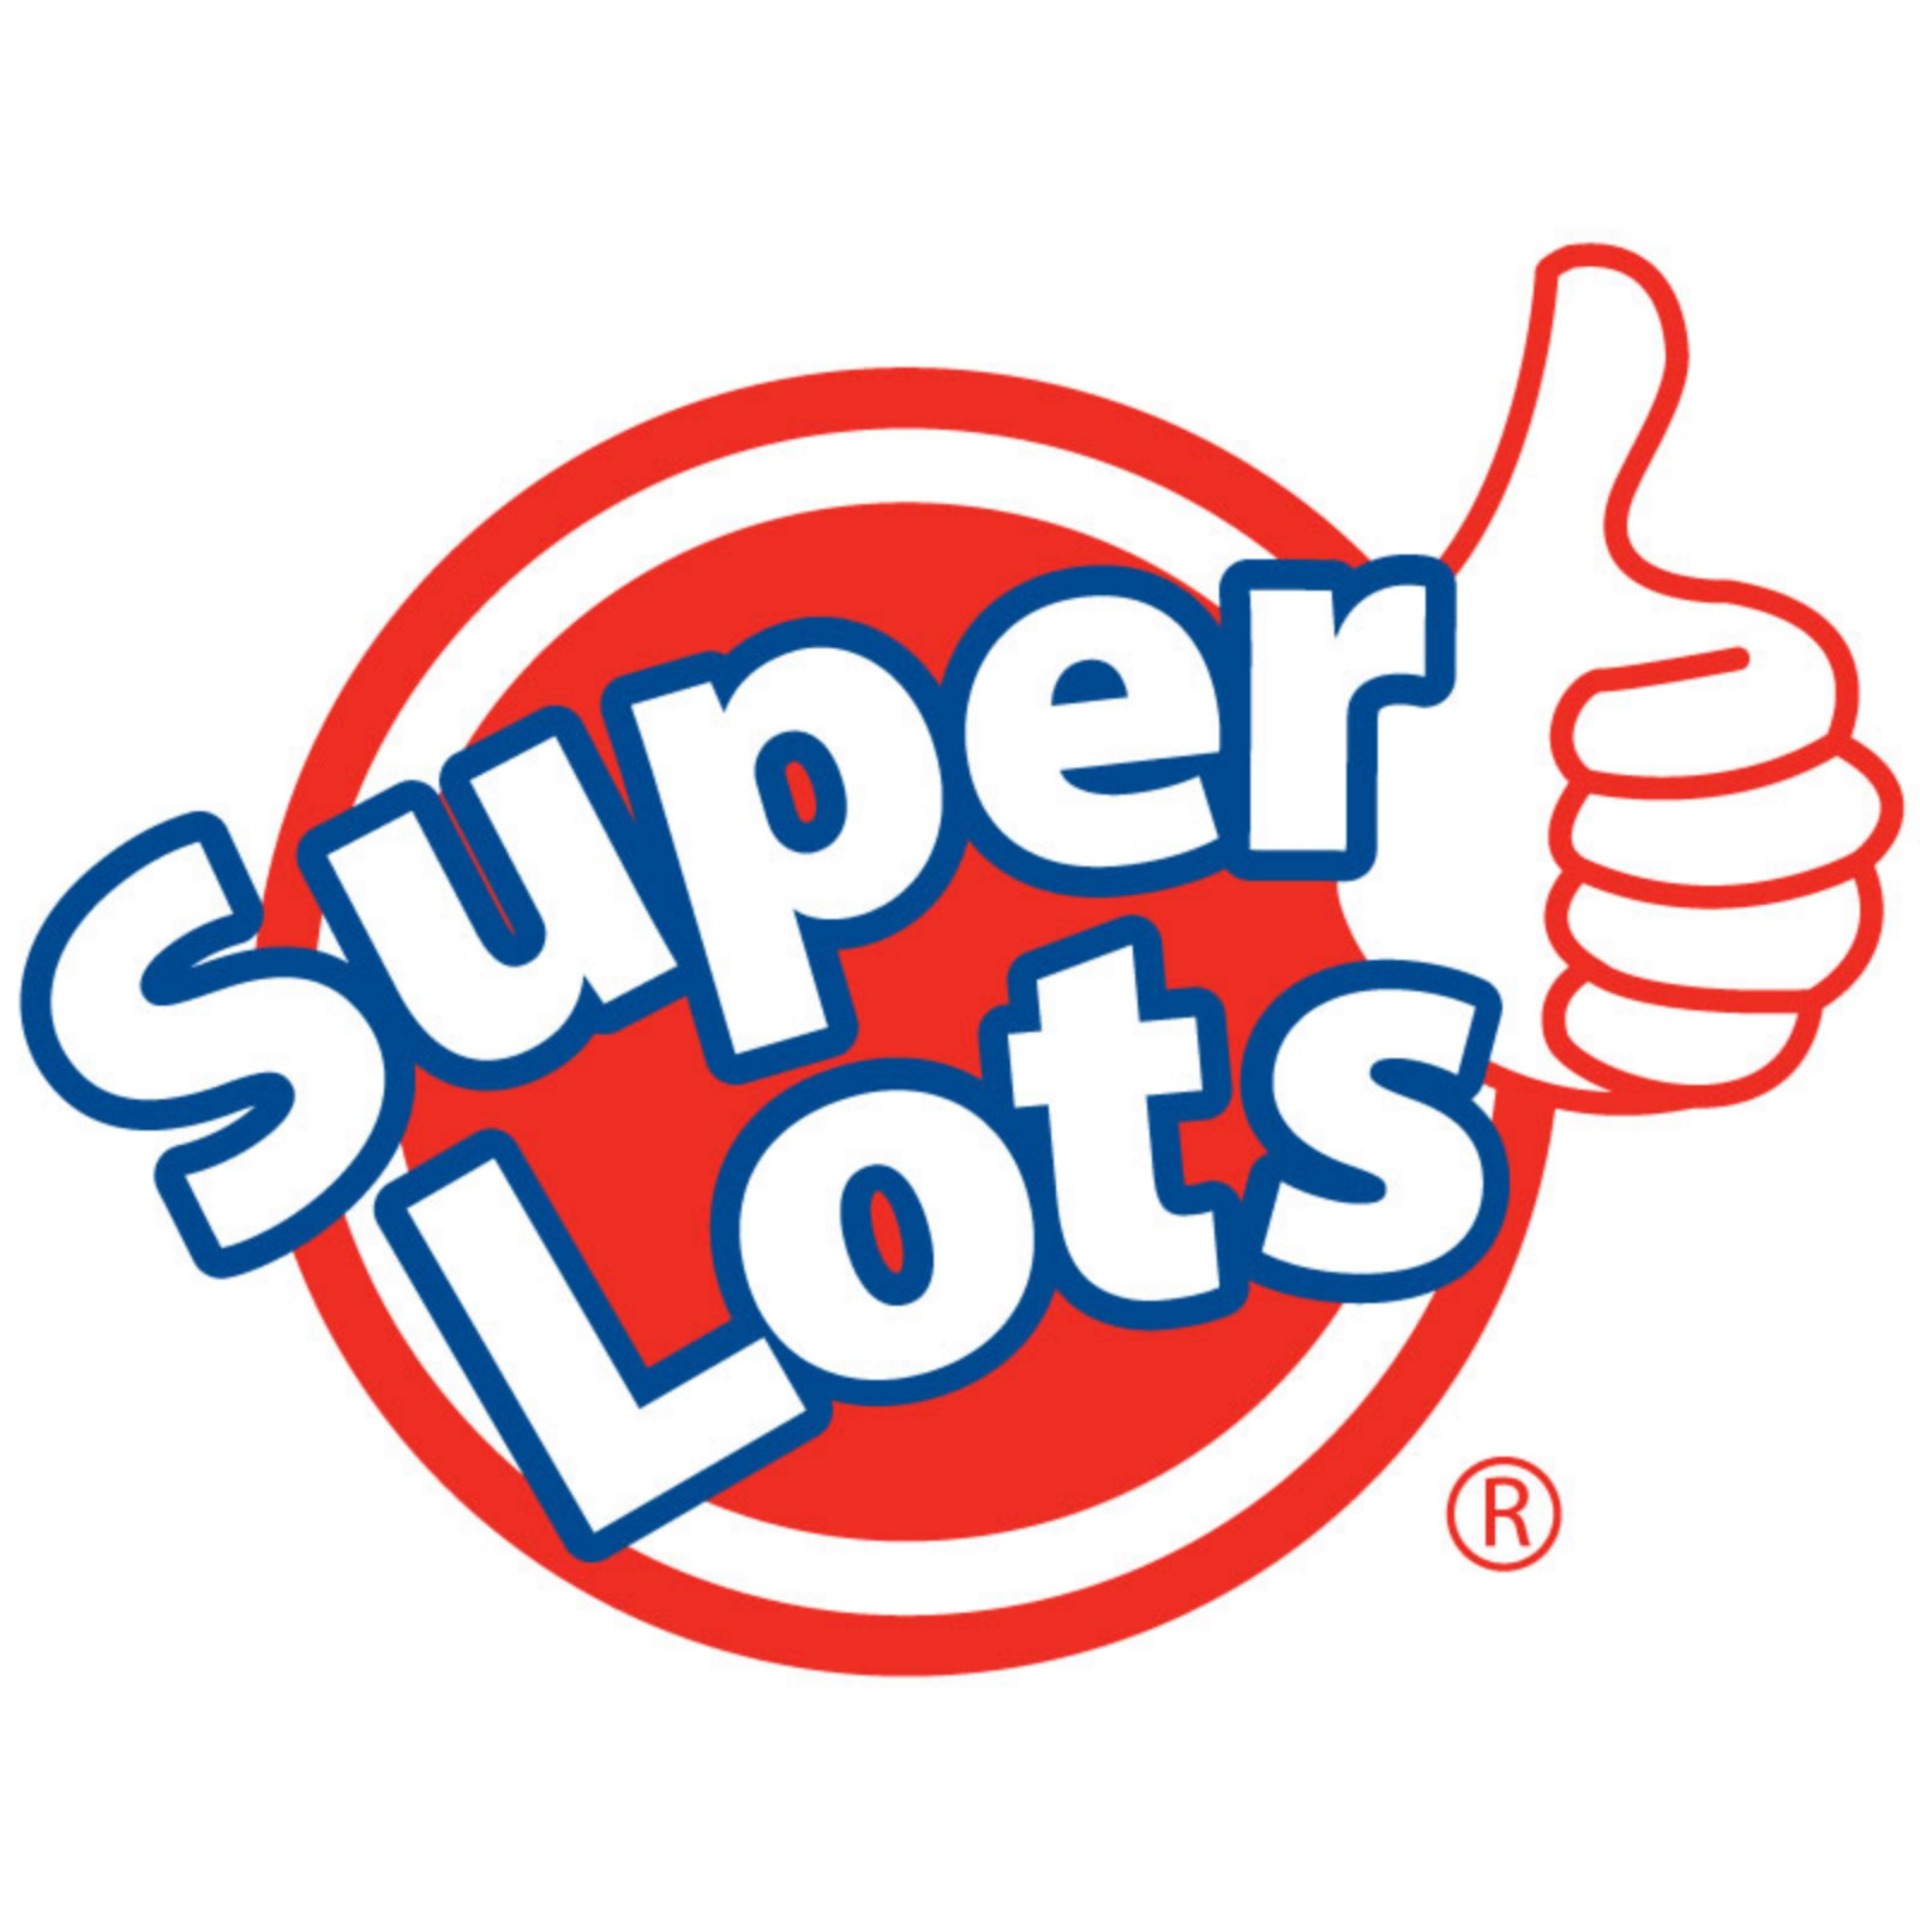 SUPER LOTS